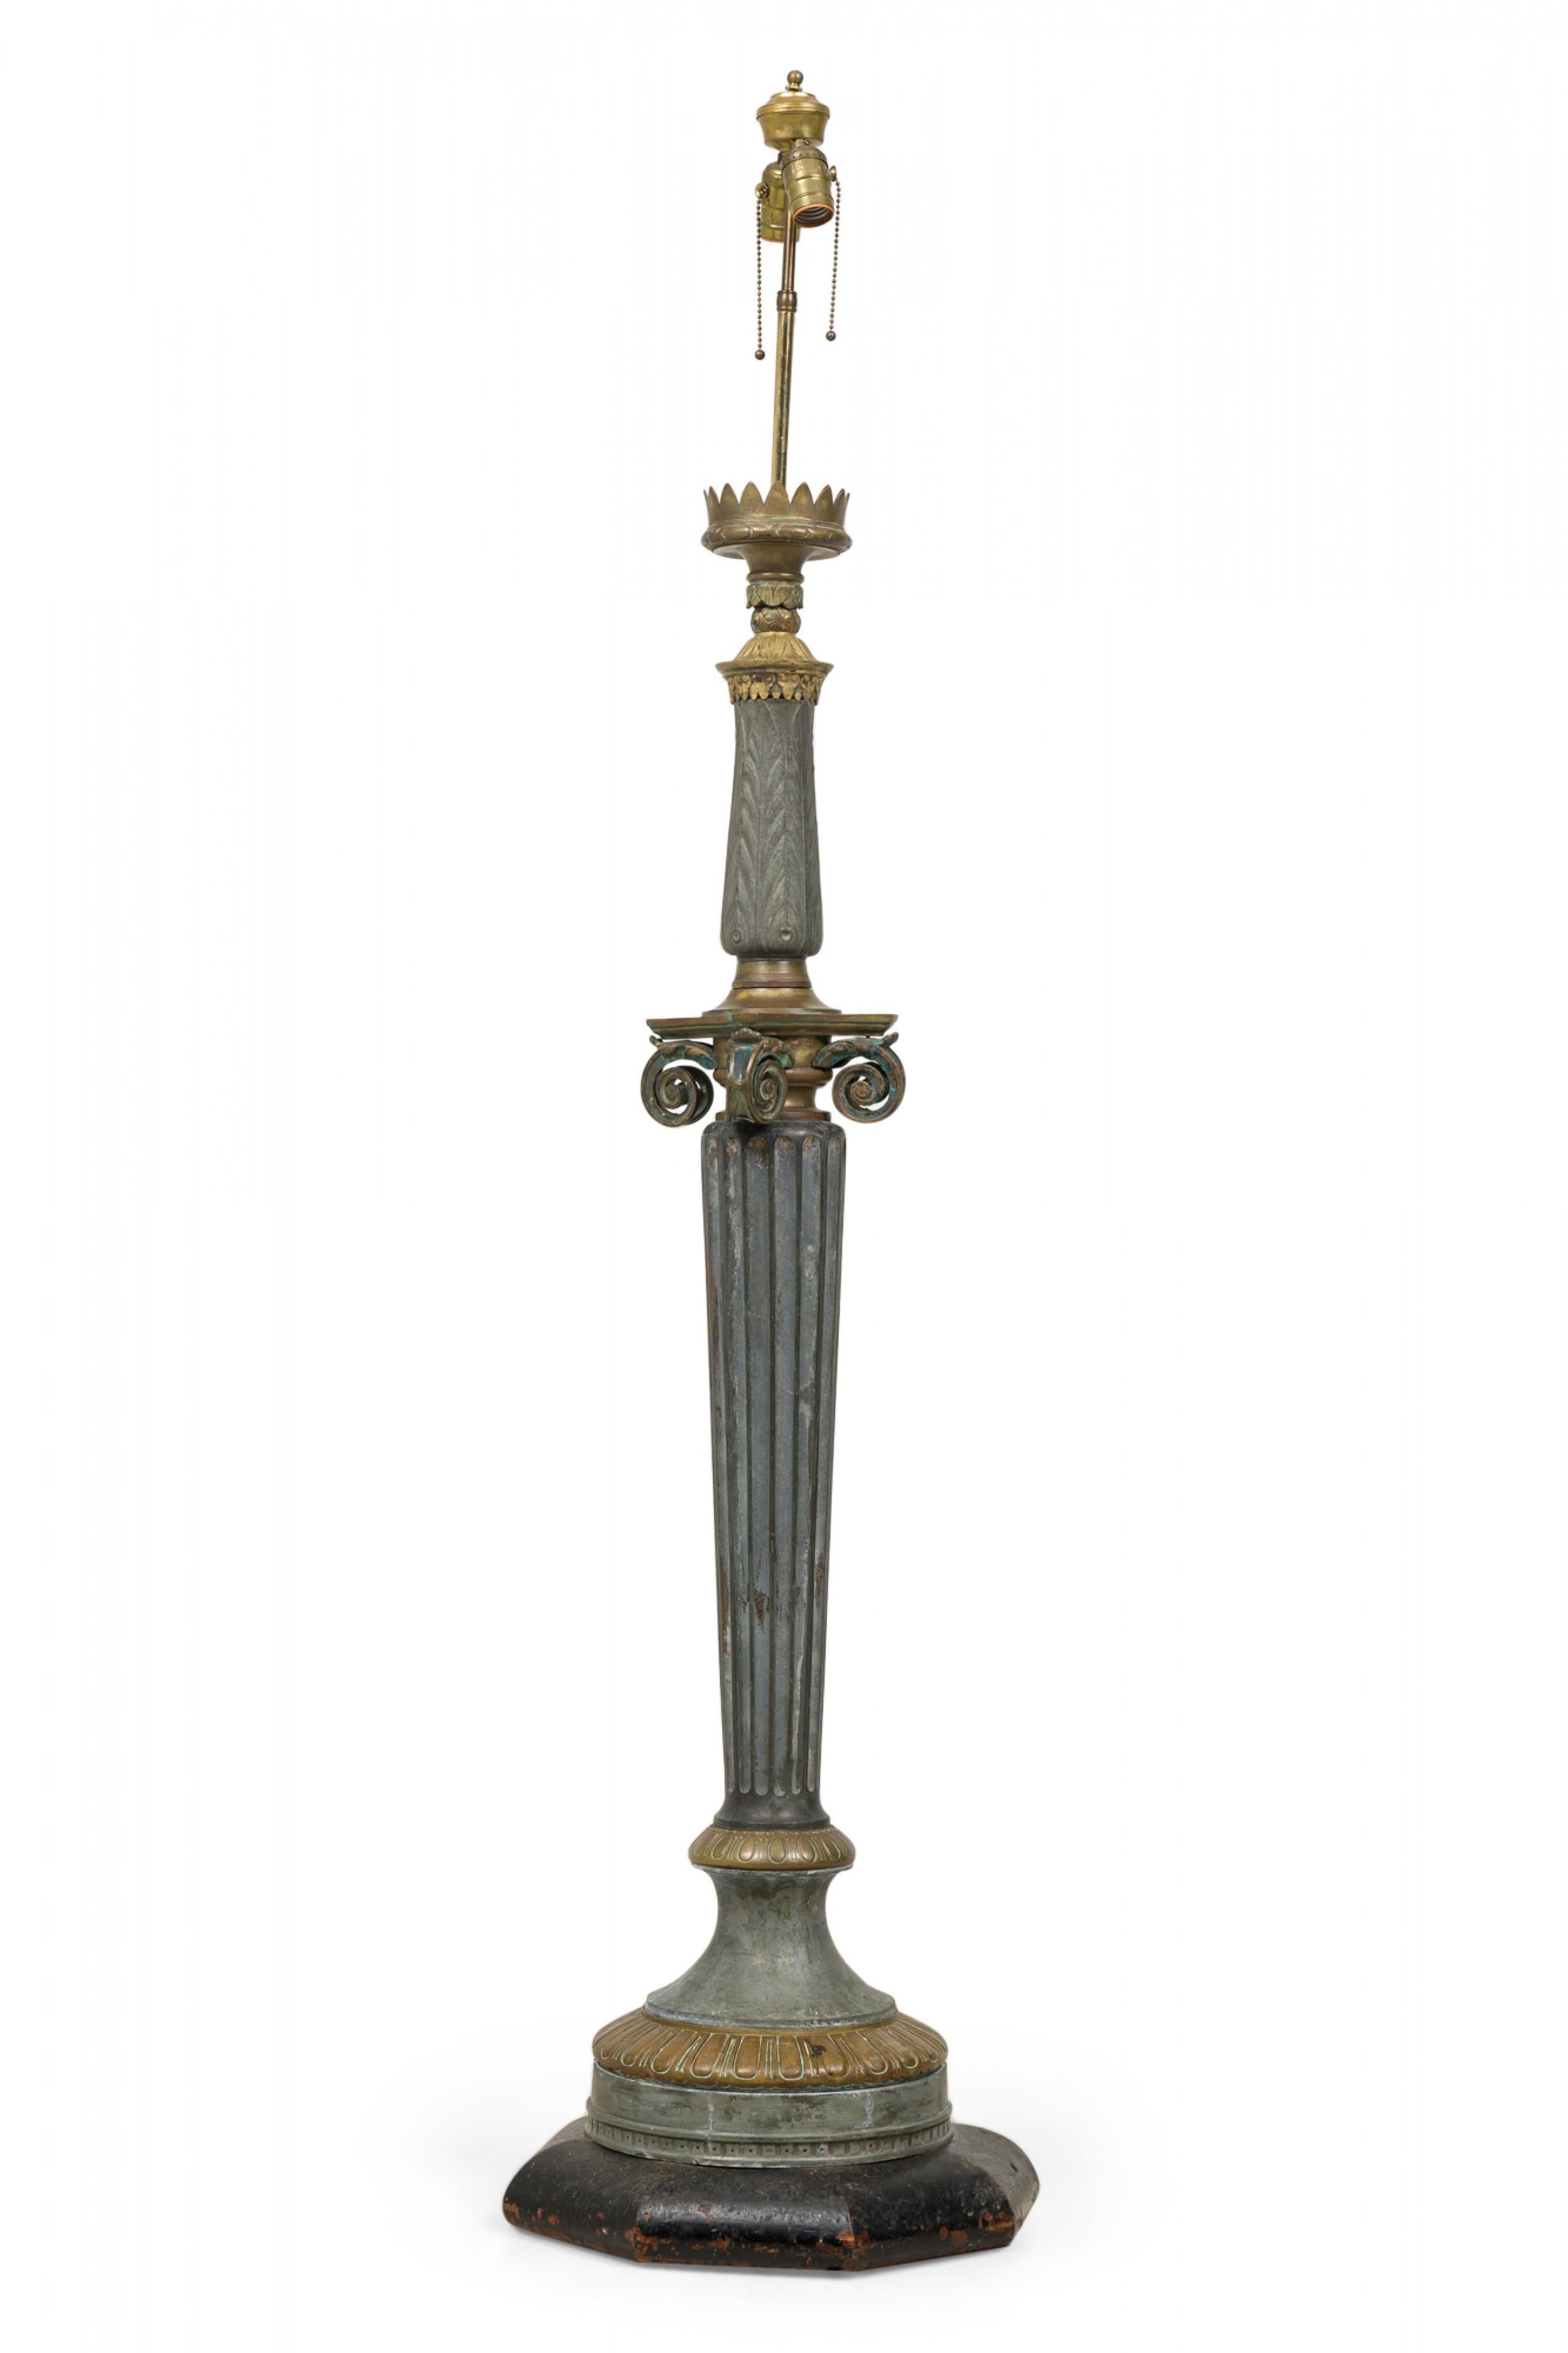 Lampadaire de style Empire français avec une forme de colonne ionique, construit en aluminium et en laiton avec une patine lourde et monté avec un luminaire à deux lumières en laiton et une base en bois peinte en noir.